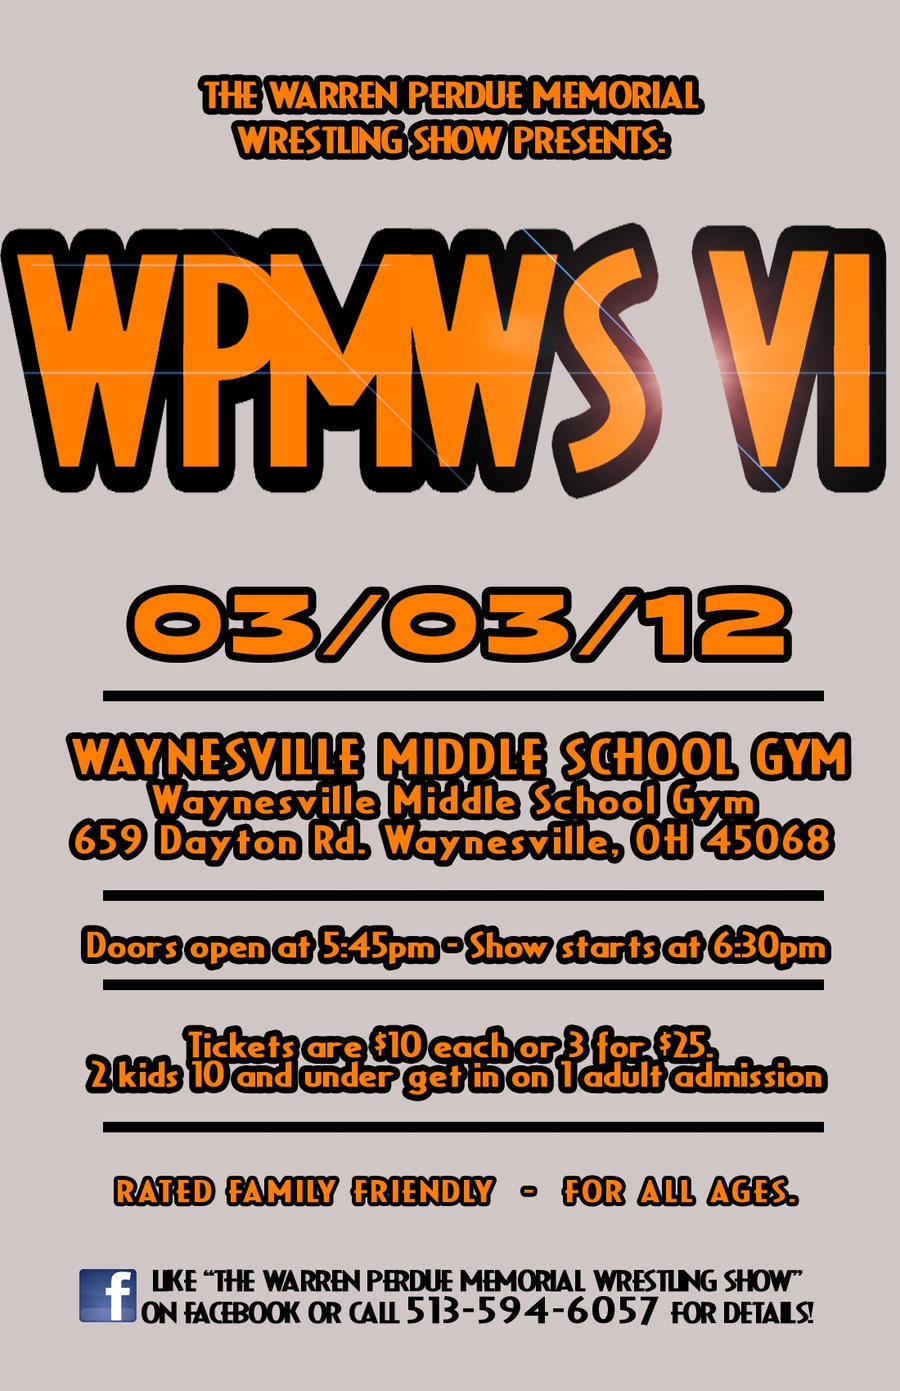 WPMWS VI Poster v 2